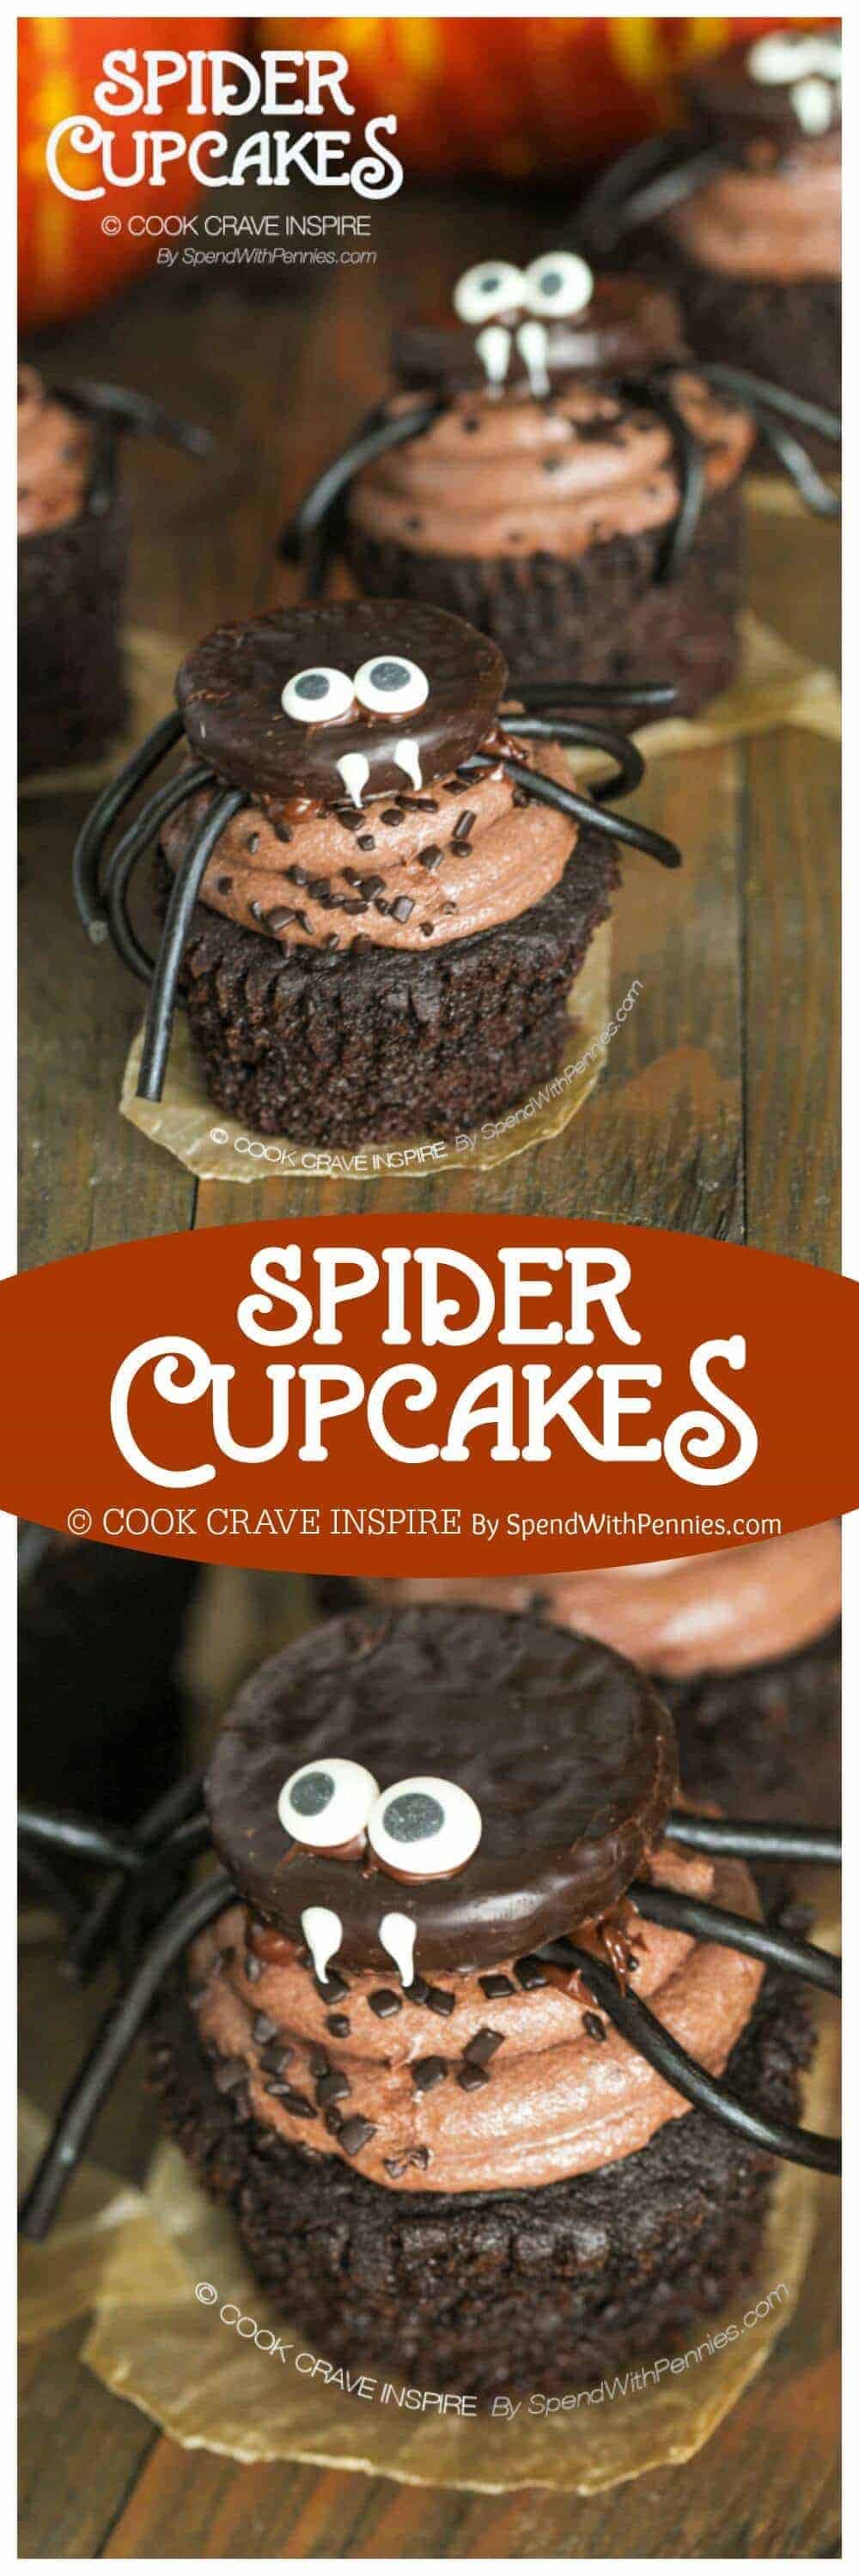 Cupcakes con una empanada de menta, arañas con título